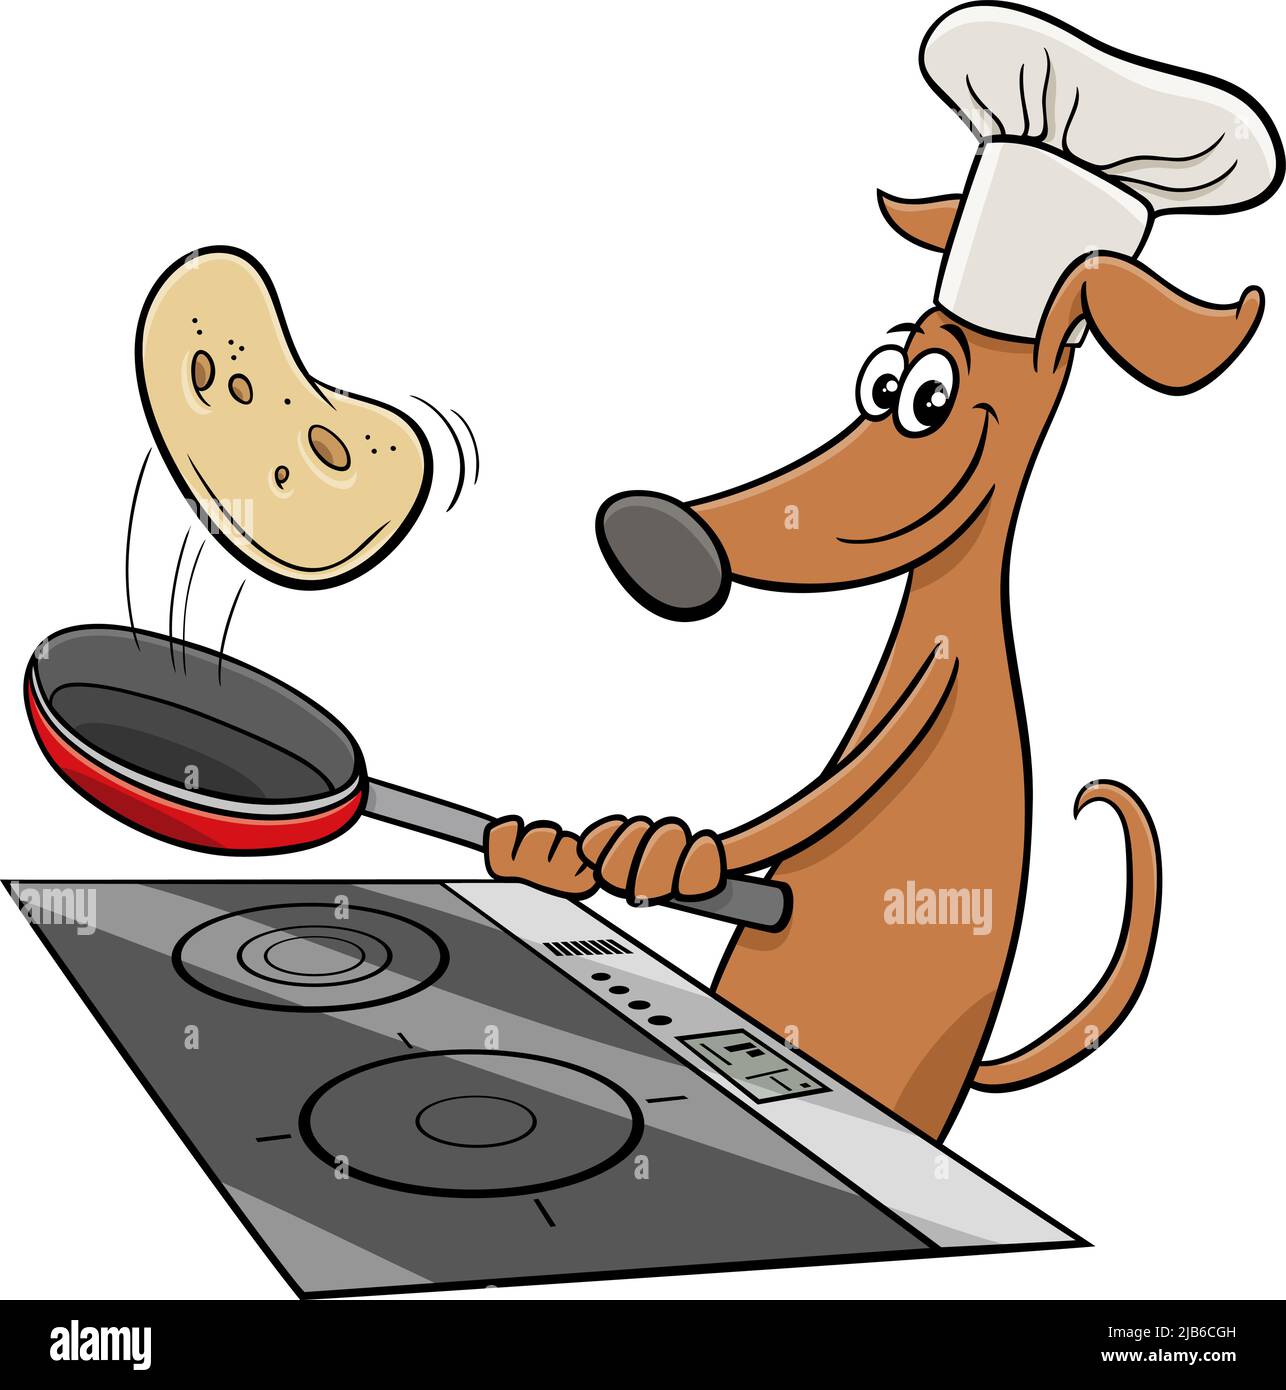 Ilustración de dibujos animados de divertido perro animal carácter de fritura tortitas Ilustración del Vector